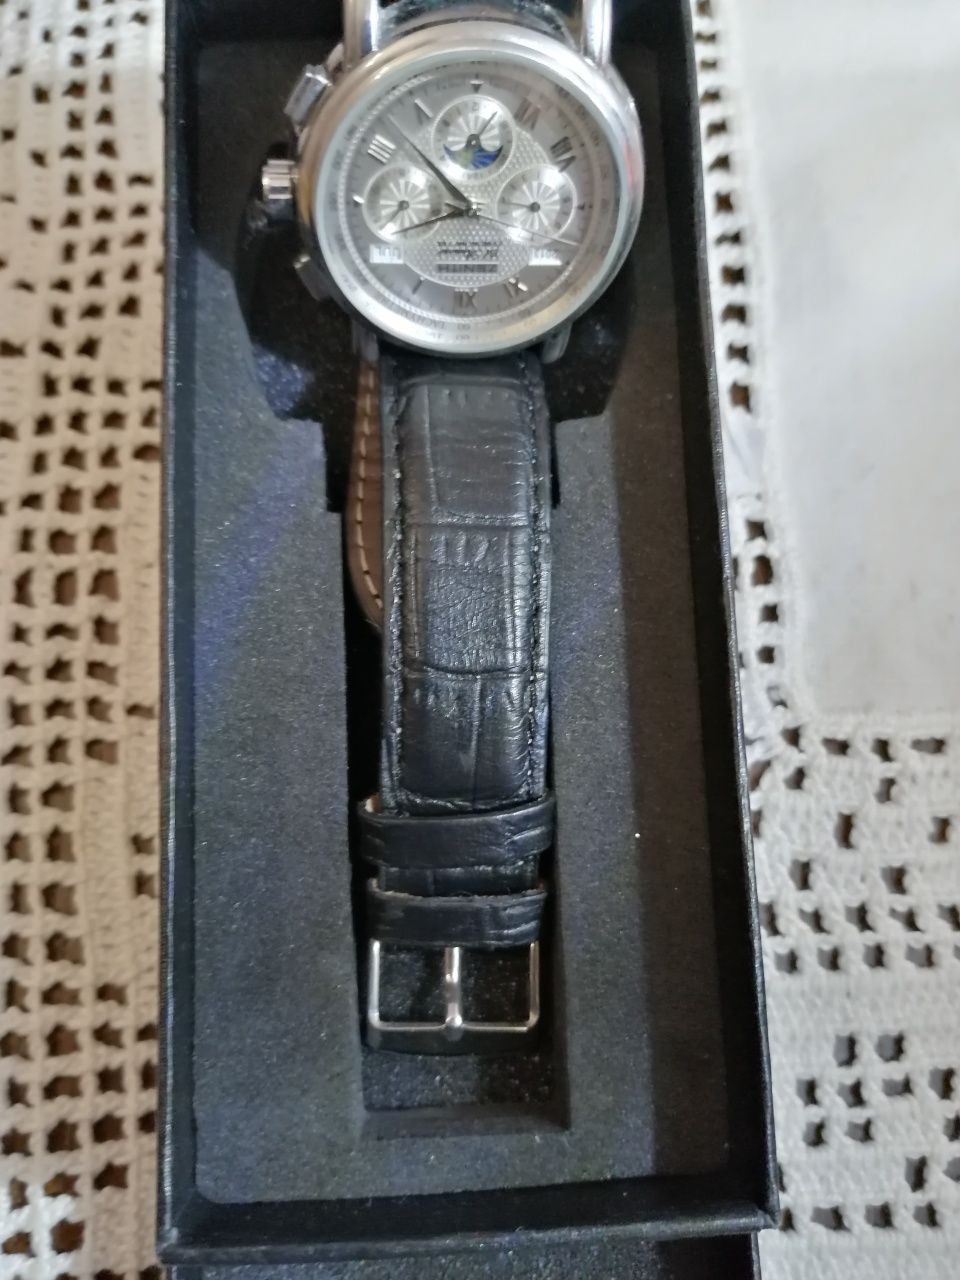 Vendo Relógio Zenithe